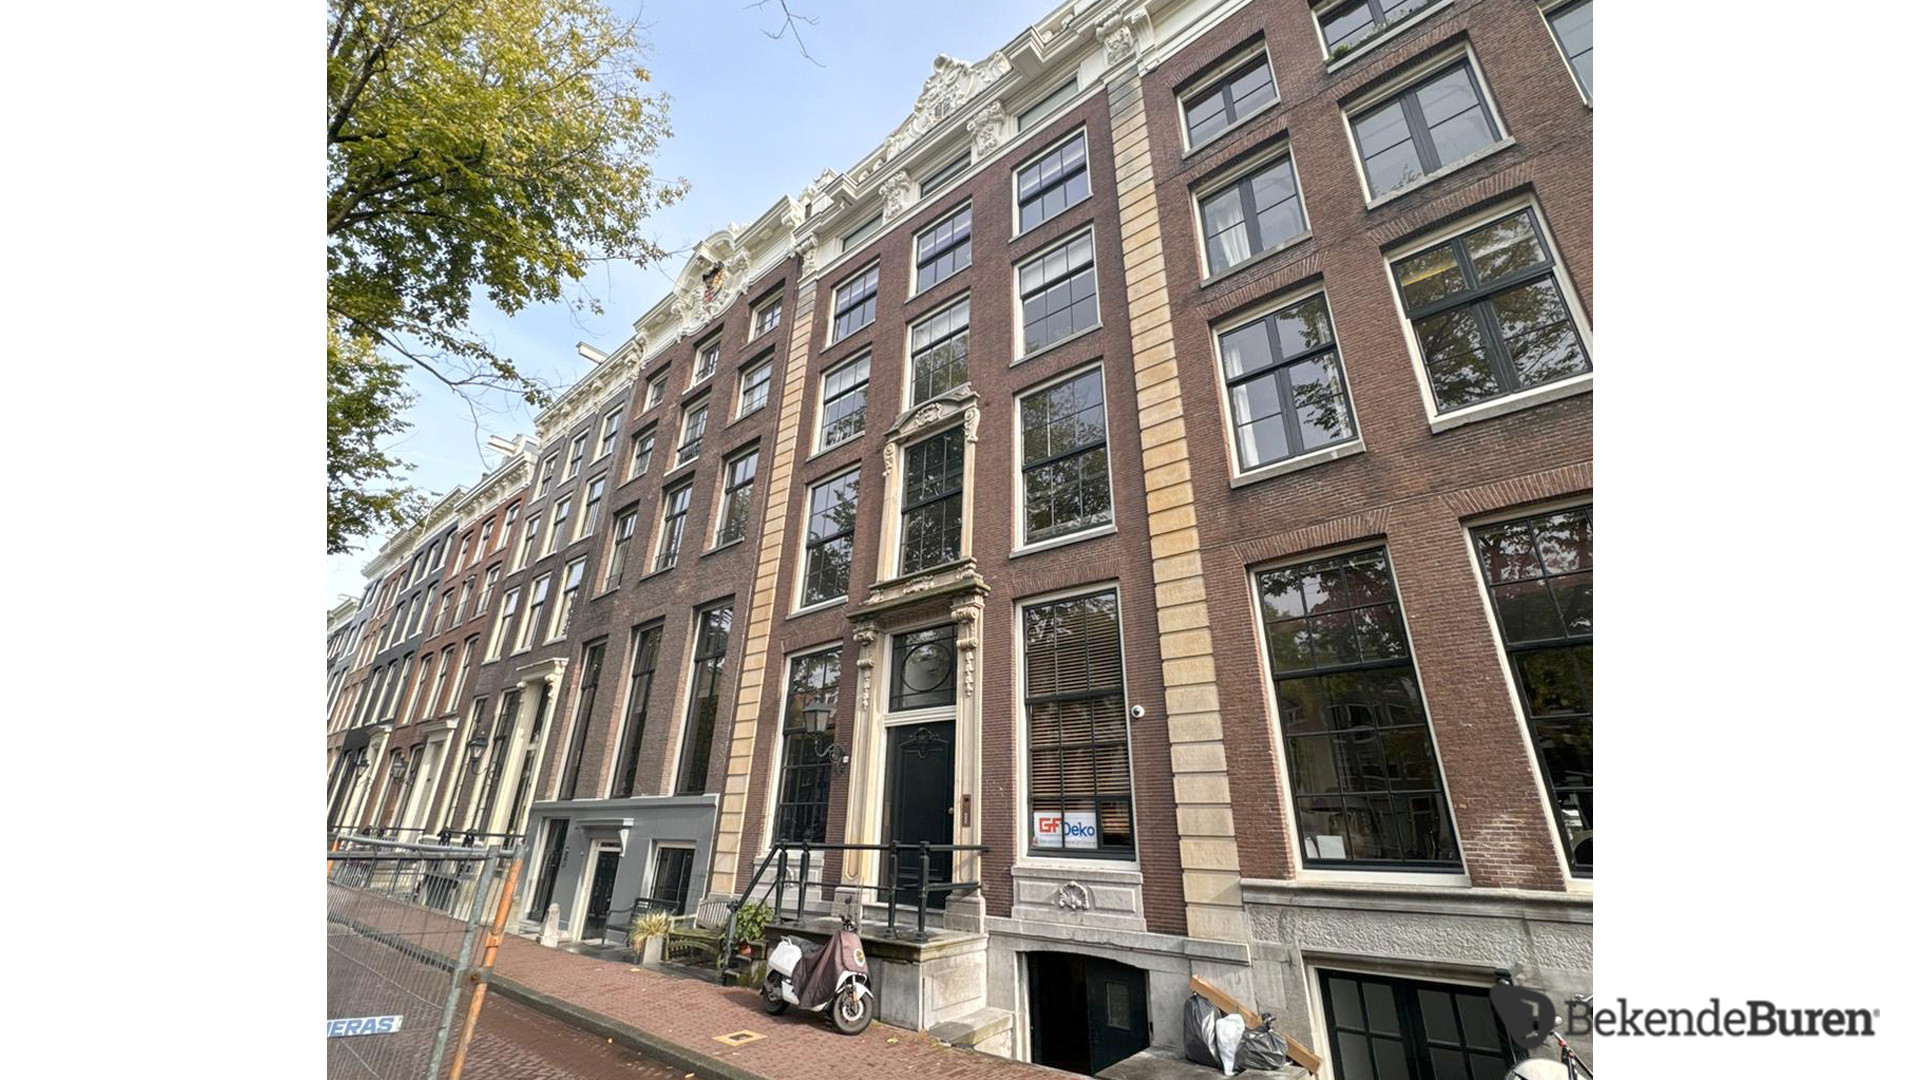 Lieke van Lexmond en Bas van Veggel kopen miljoenenpand aan de Keizersgracht in Amsterdam. Zie foto's 3